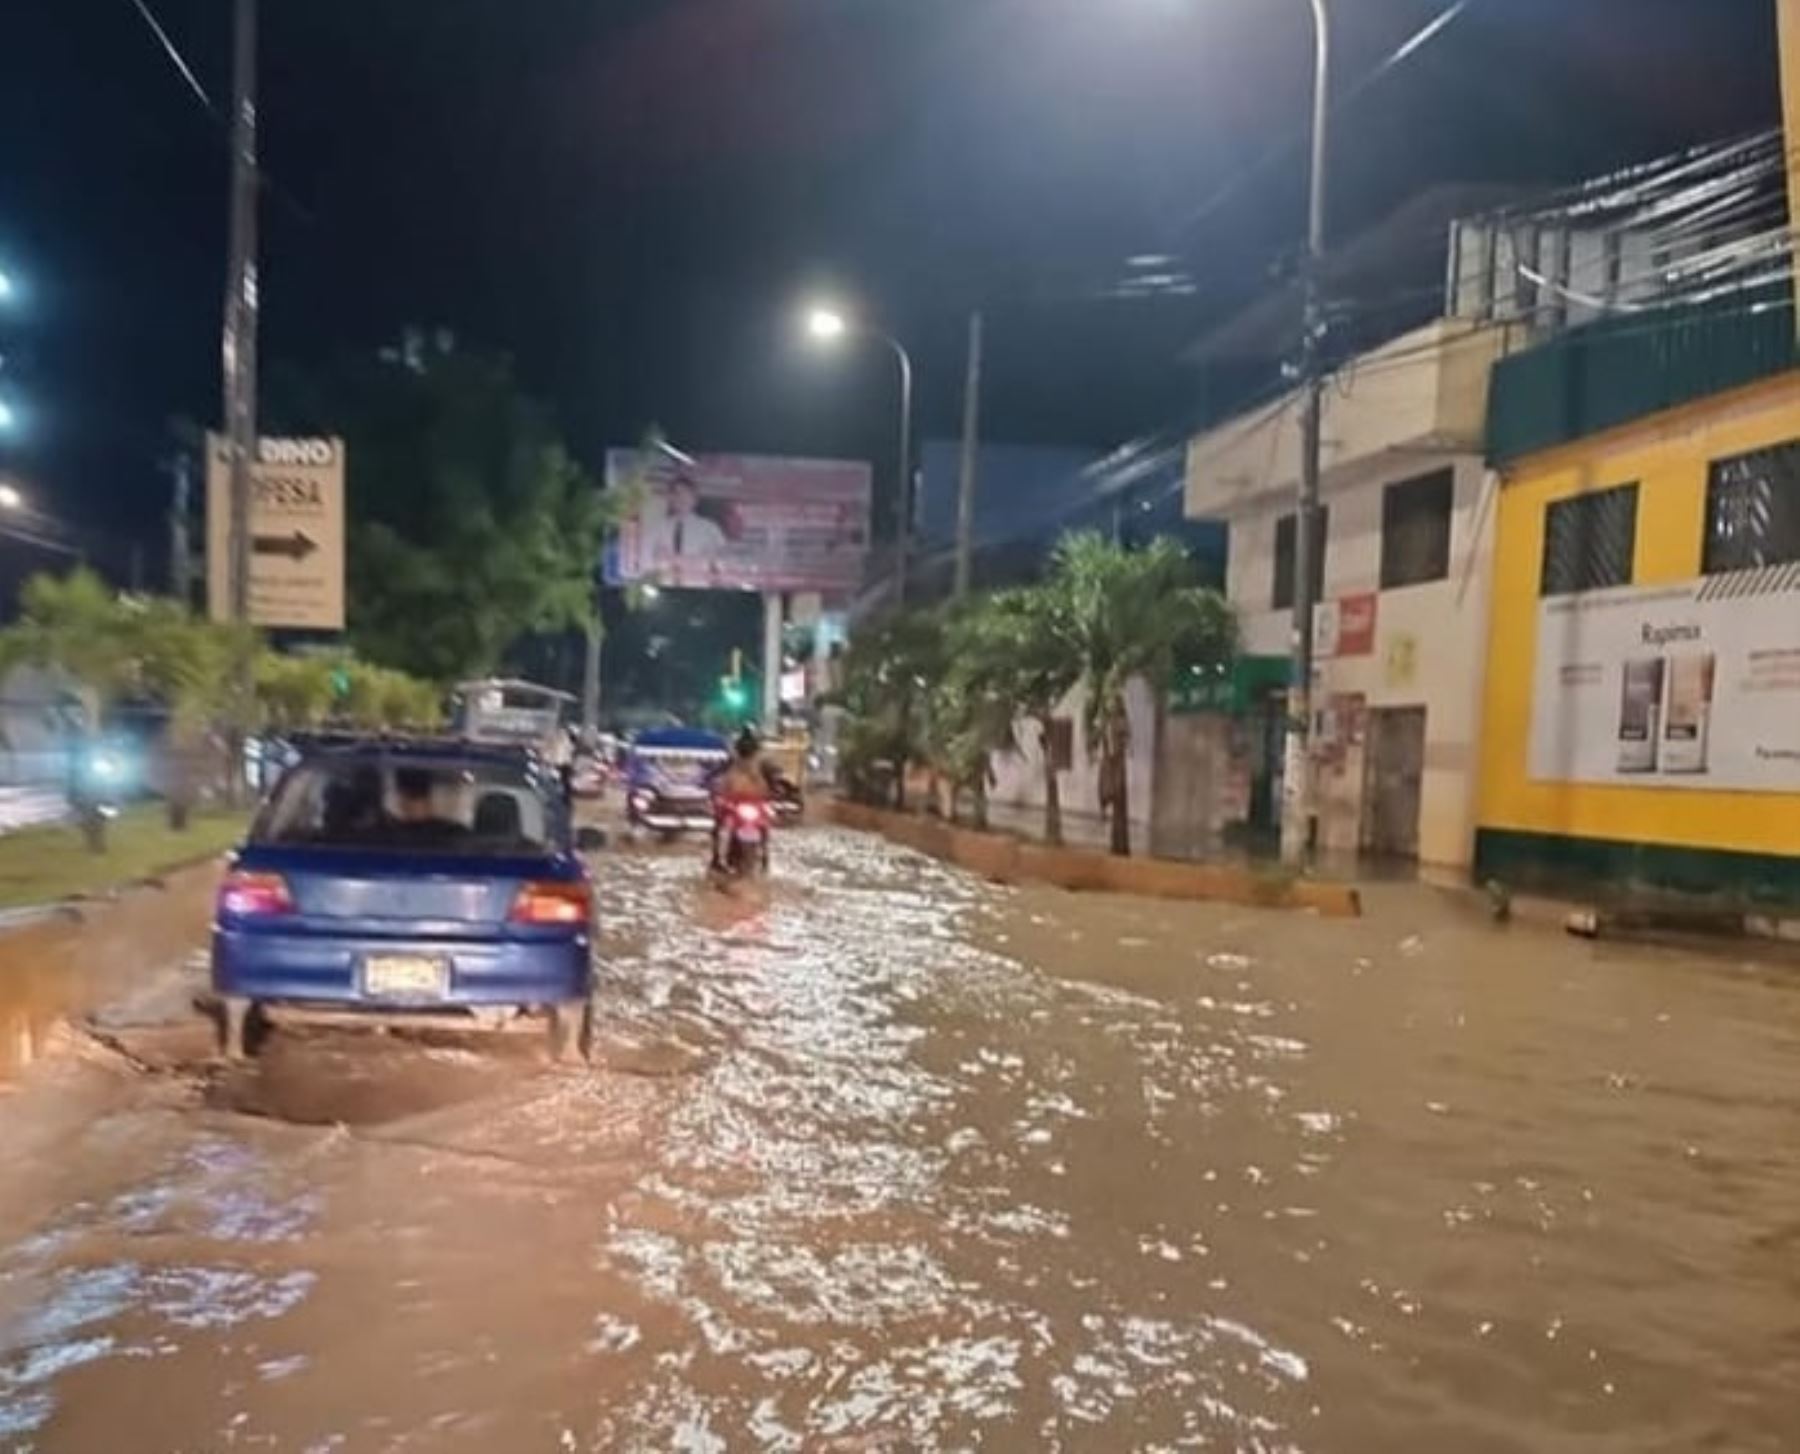 Lluvias intensas se registraron anoche en Tumbes causando aniegos en varias viviendas ubicadas en el centro poblado Pampa Grande. Foto: Milagros Rodríguez.